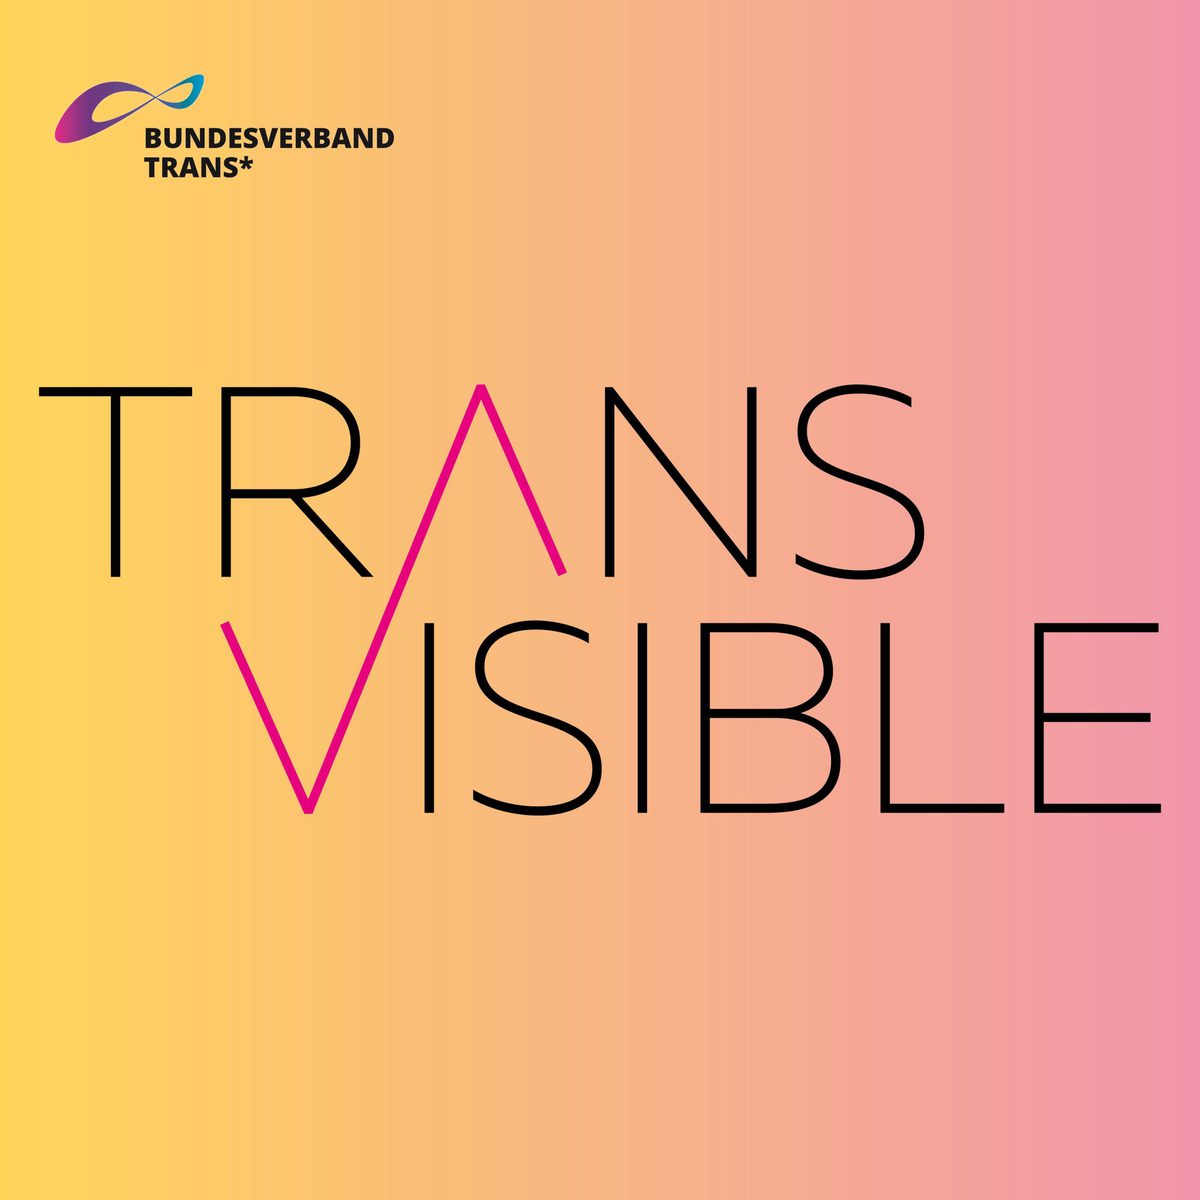 Auf gelbem Hintergrund steht der Titel der Konferenz: "Transvisible" (auf deutsch: Transsichtbarkeit). In der Ecke ist das Logo des BVT*